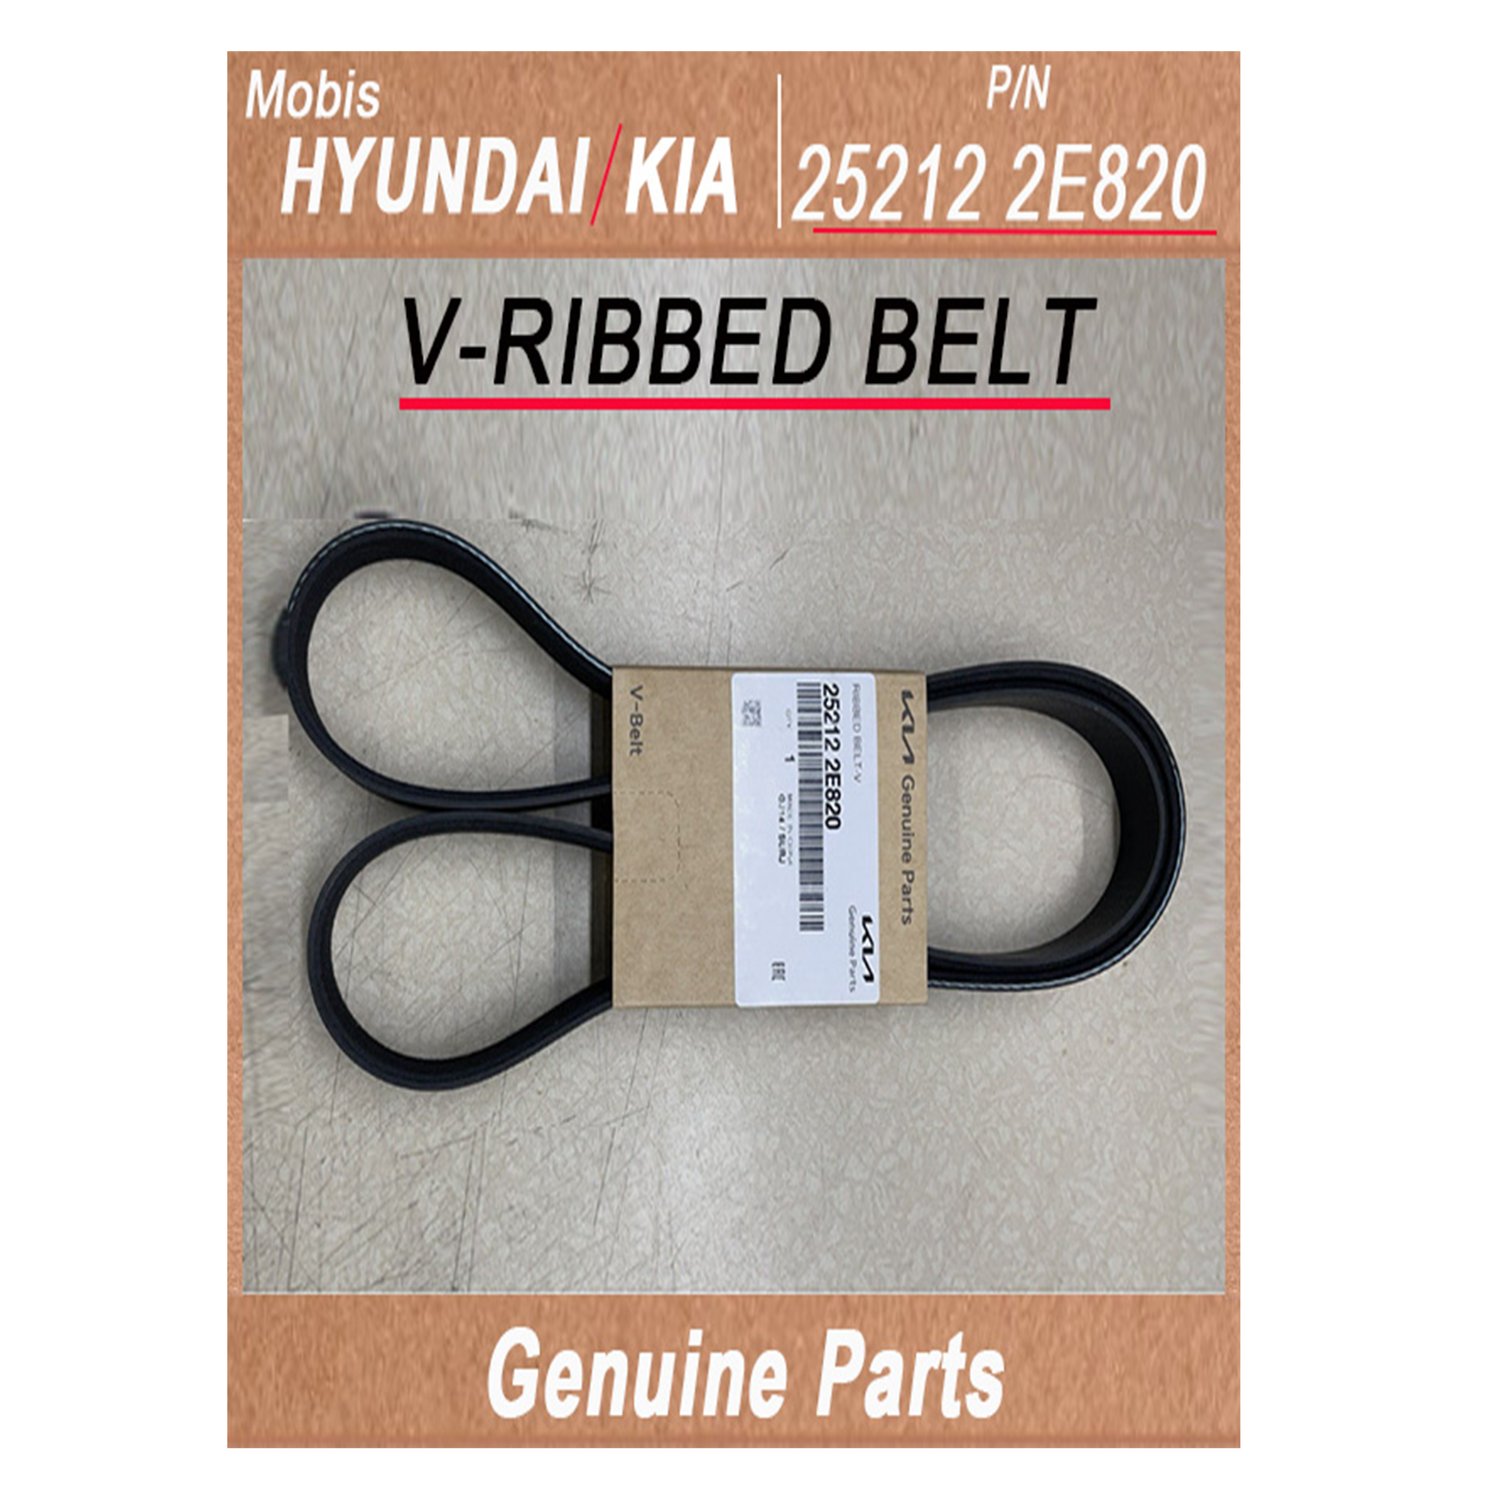 252122E820 _ V_RIBBED BELT _ Genuine Korean Automotive Spare Parts _ Hyundai Kia _Mobis_